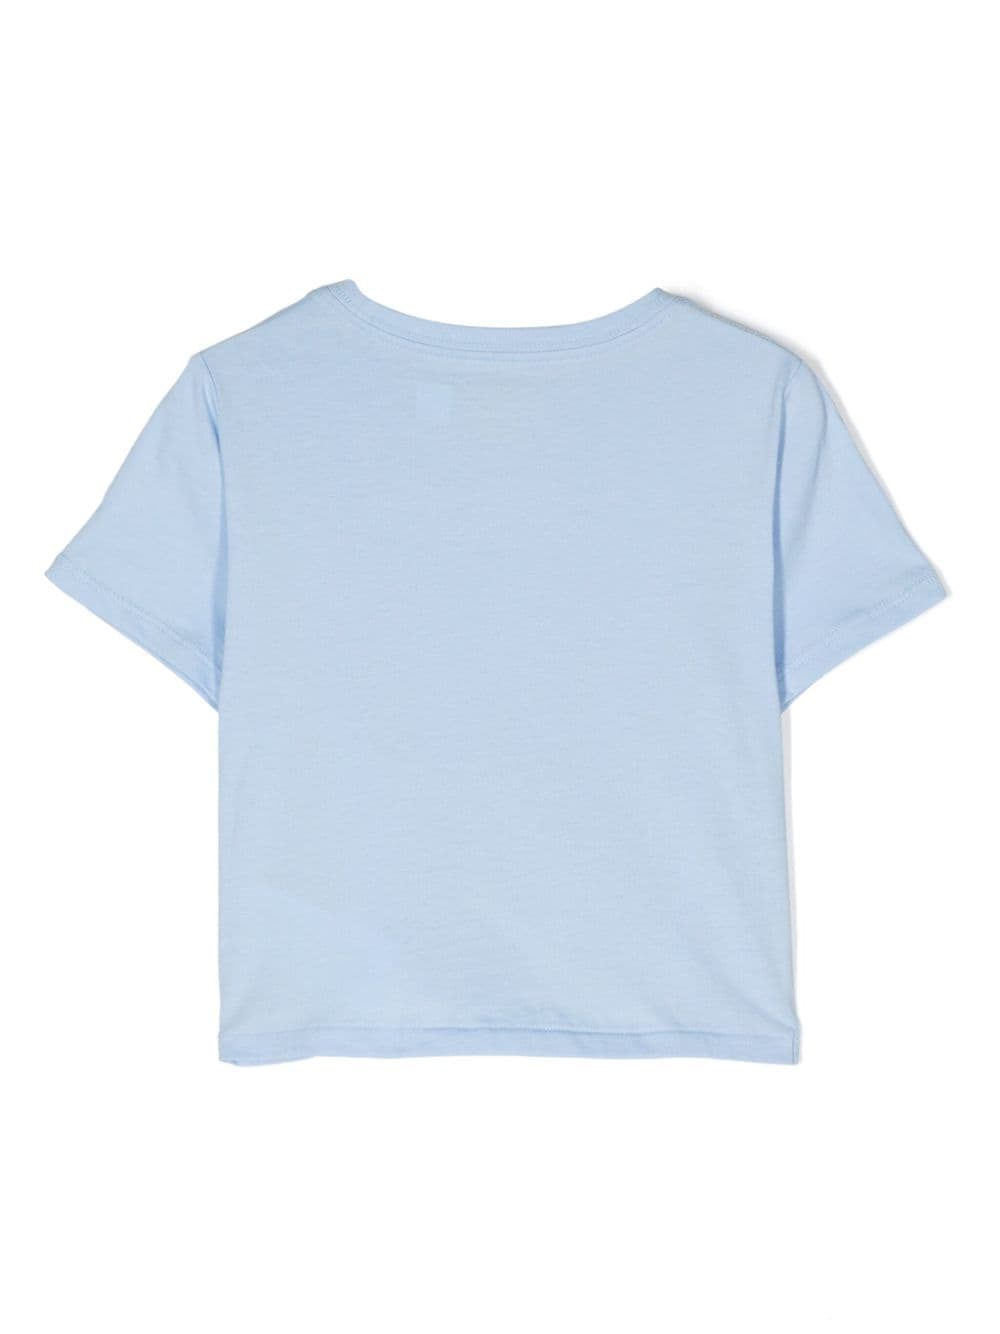 T-shirt bleu clair fille